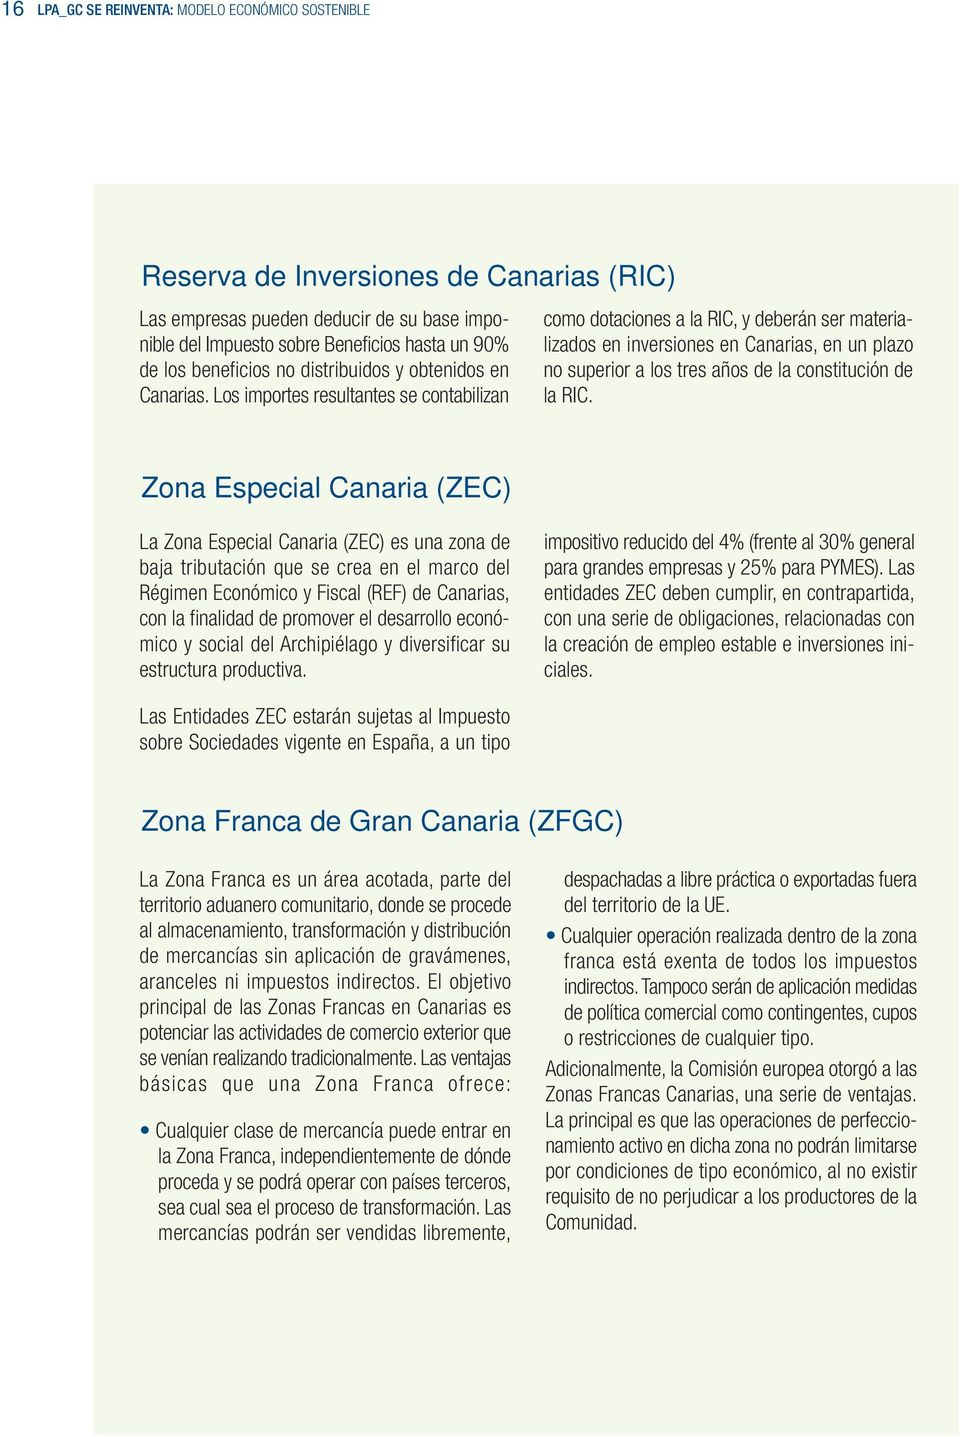 Los importes resultantes se contabilizan como dotaciones a la RIC, y deberán ser materializados en inversiones en Canarias, en un plazo no superior a los tres años de la constitución de la RIC.